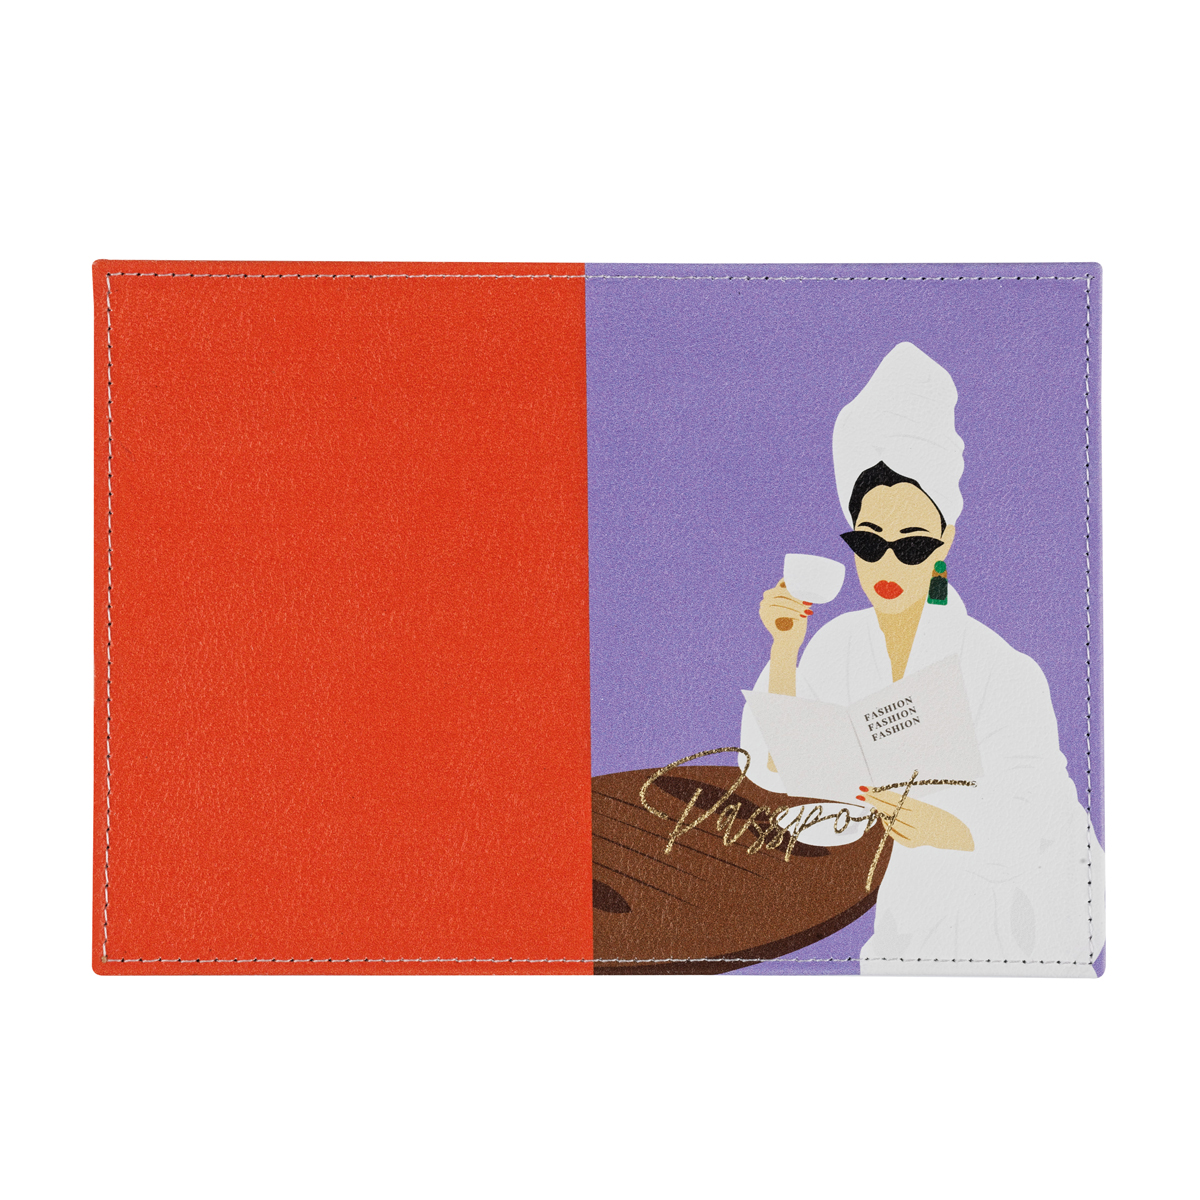 Обложка для паспорта OfficeSpace Fashion, кожа, цветная печать, тиснение фольгой